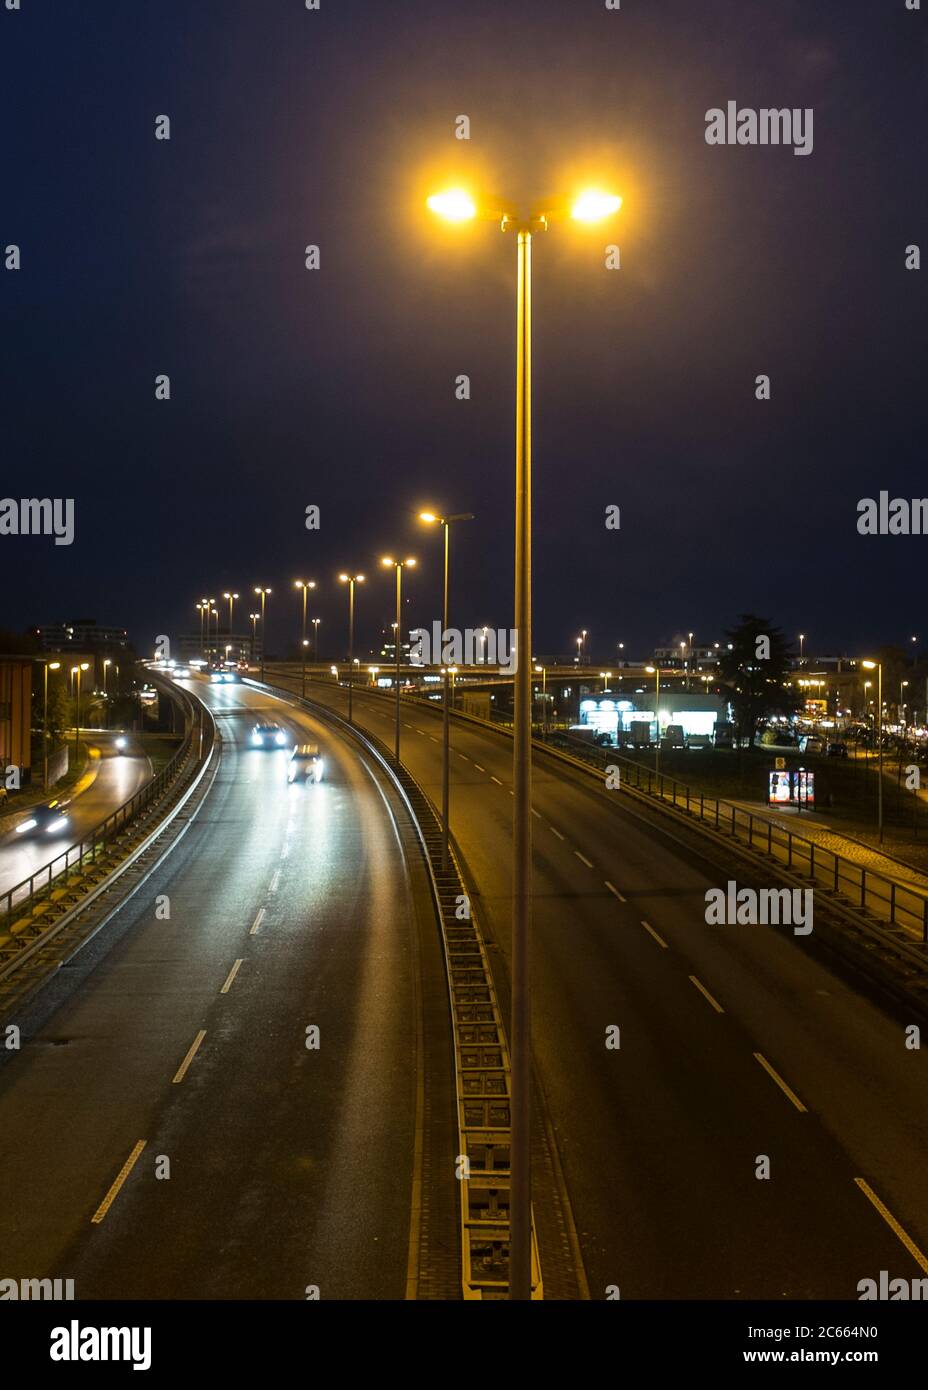 Traffic at night on an illuminated city street Stock Photo